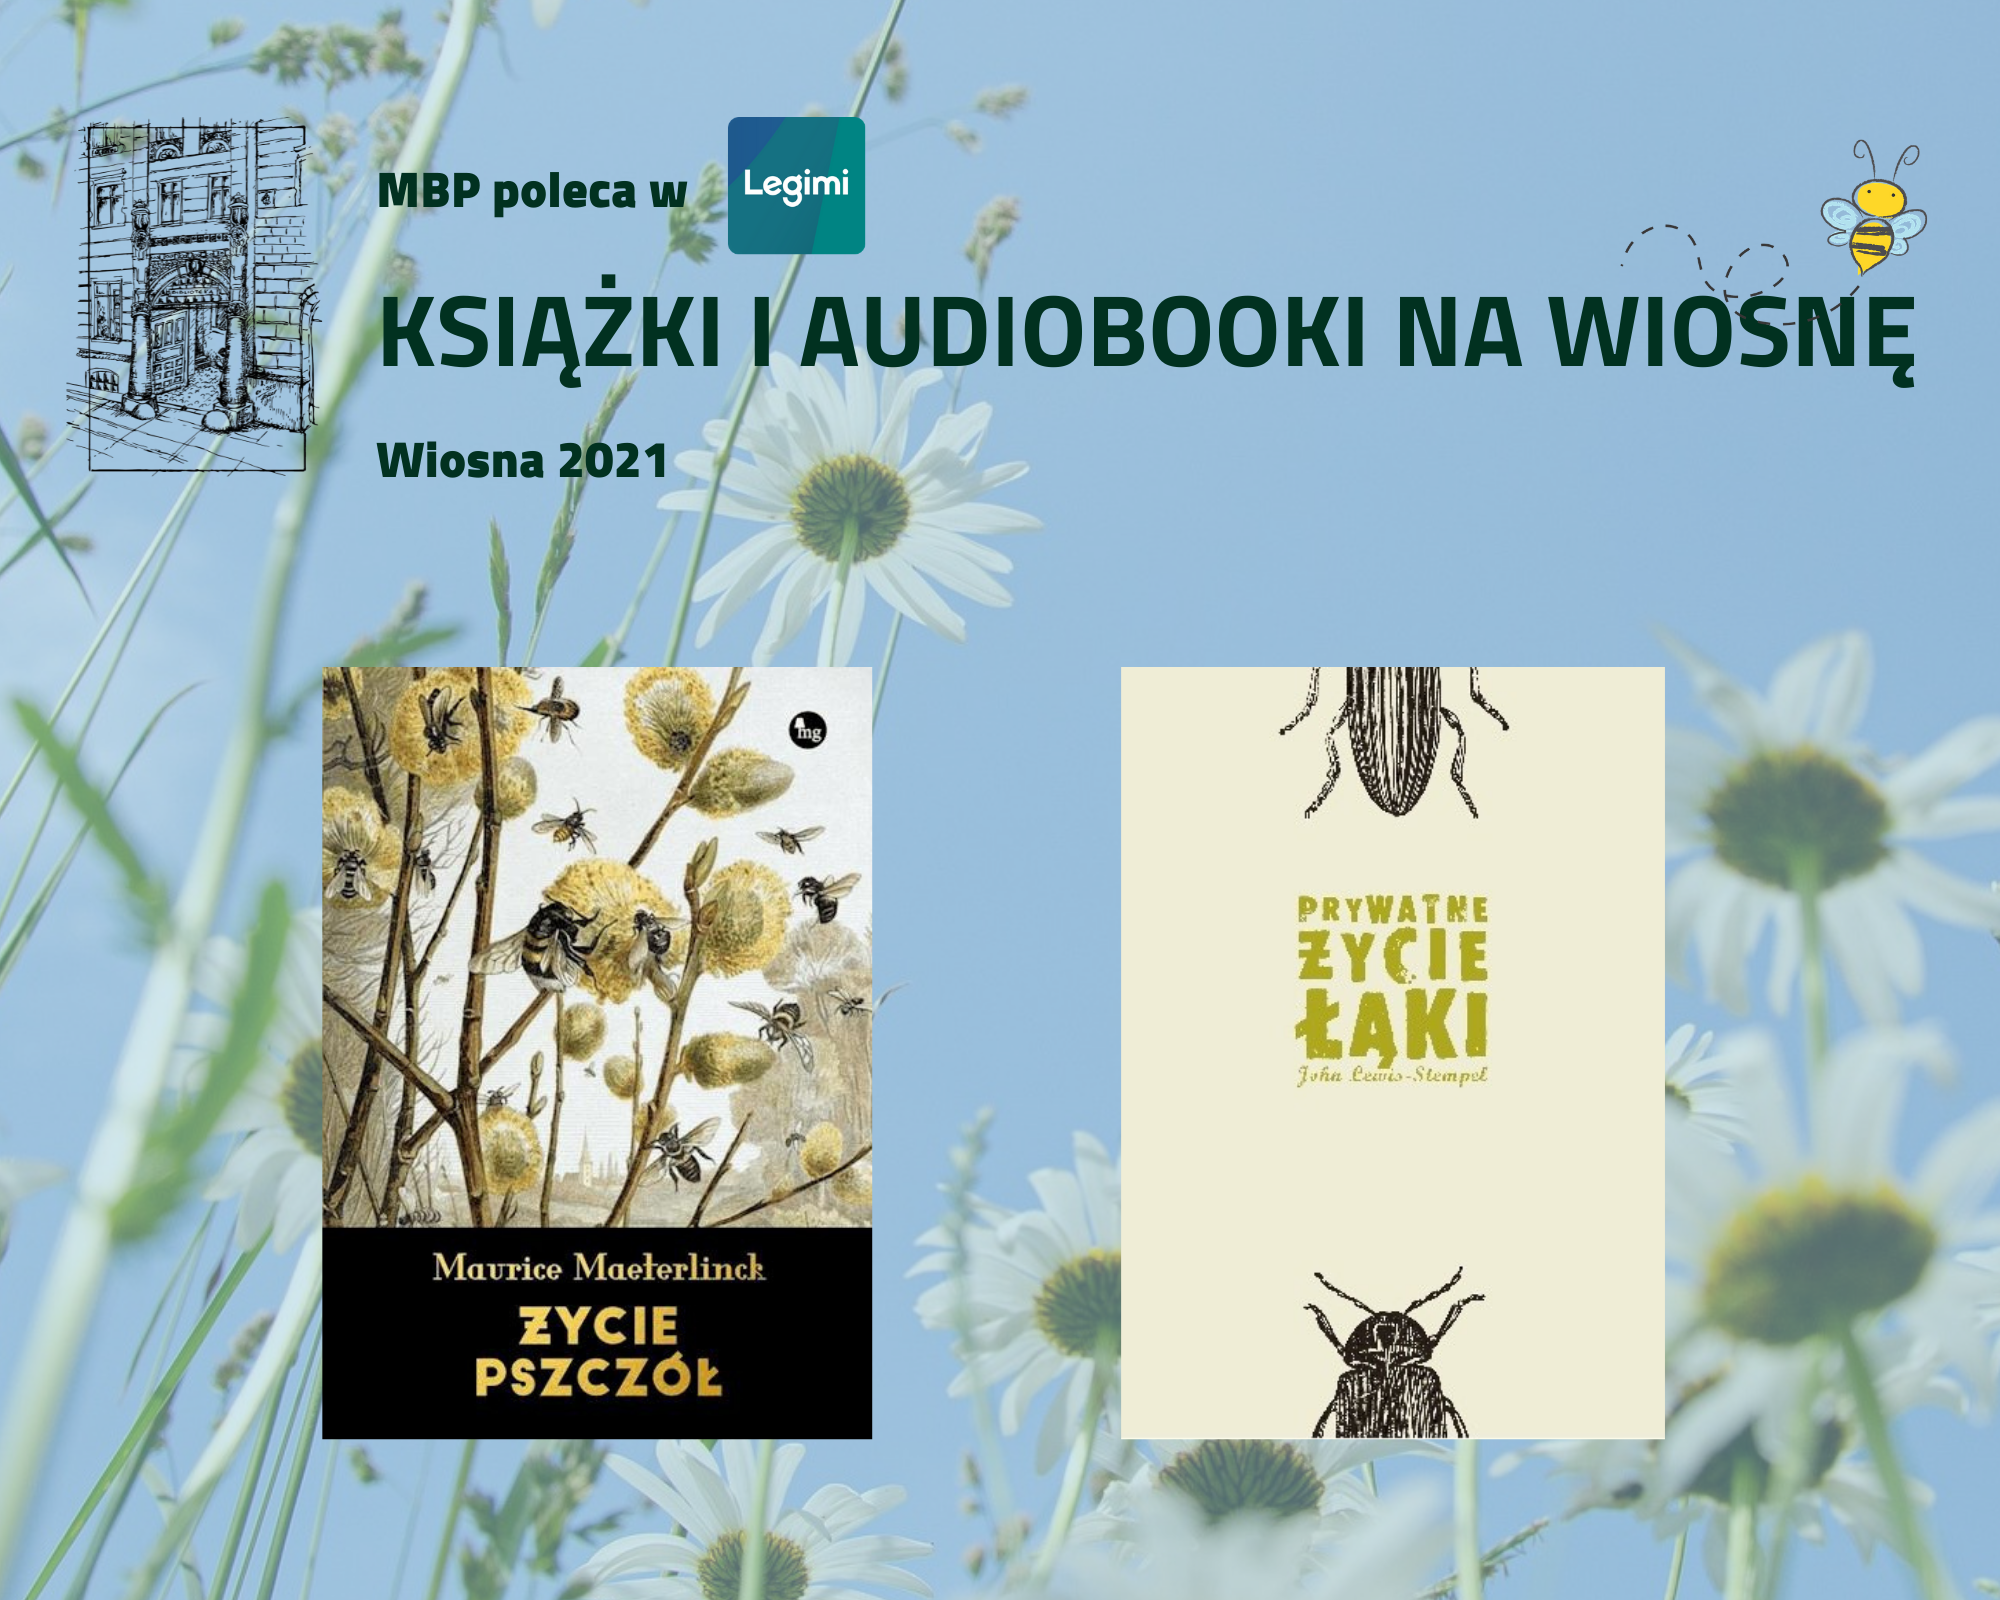 Trzy książki i audiobooki na wiosnę w abonamencie Legimi